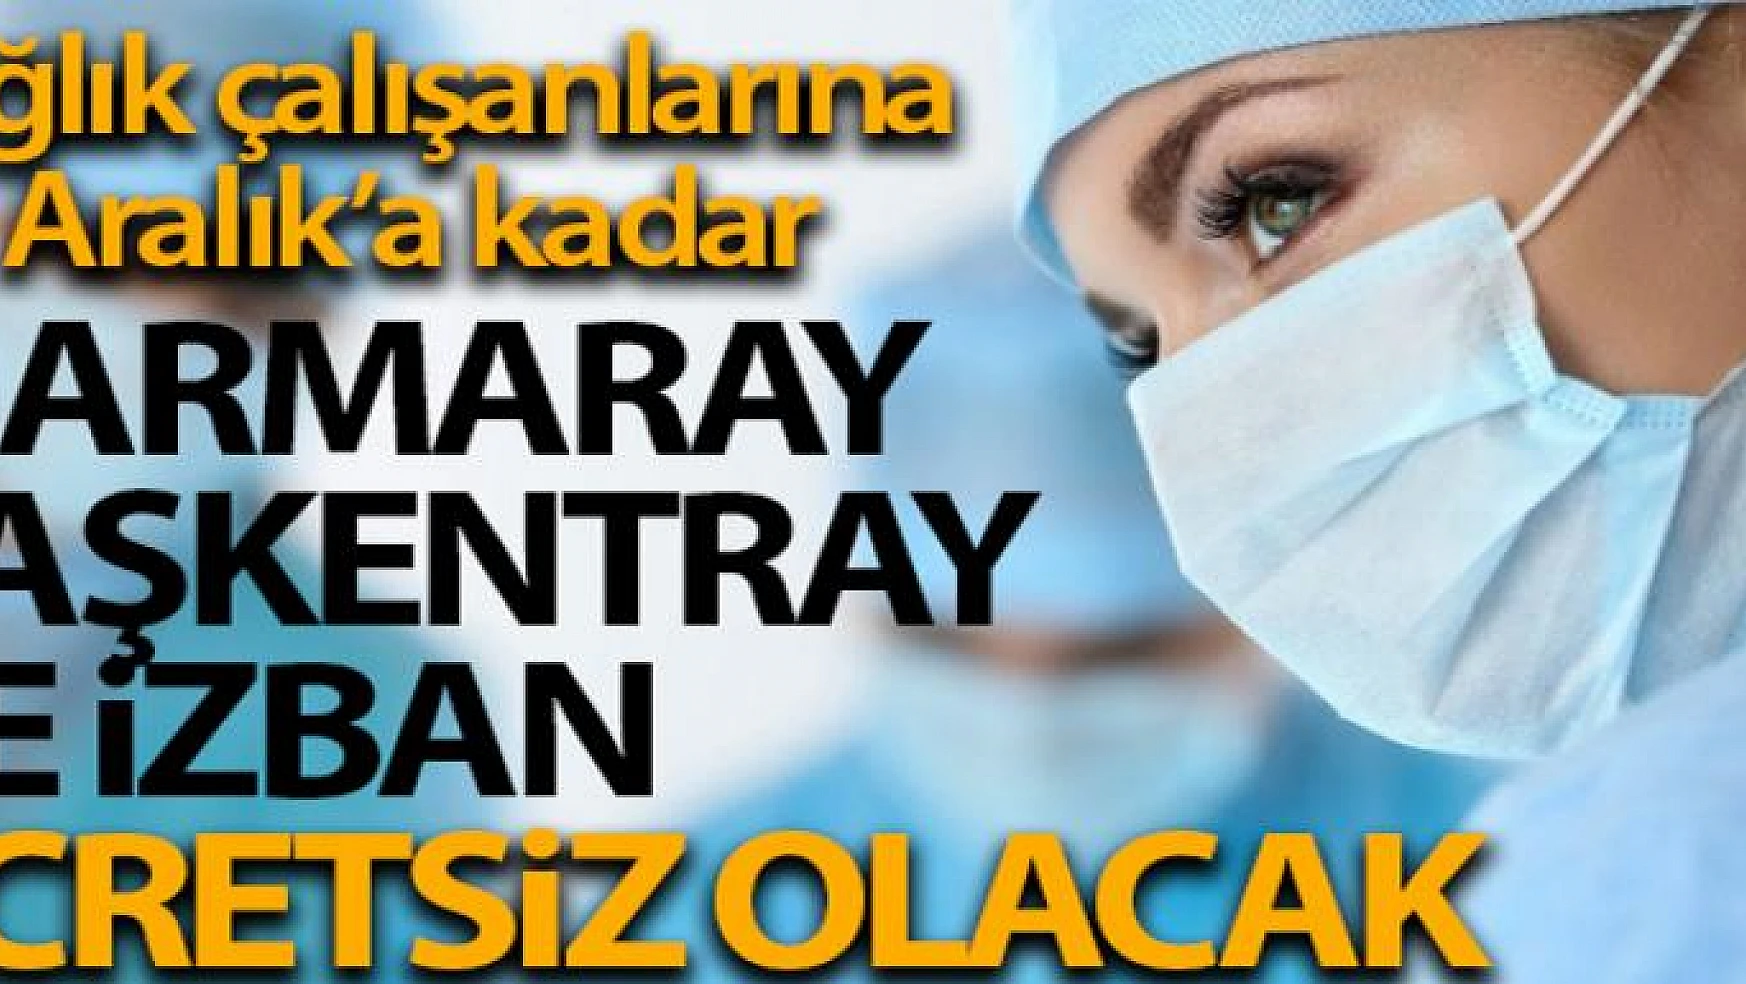 Sağlık çalışanları yıl sonuna kadar Marmaray, Başkentray ve İZBAN'dan ücretsiz yararlanacak